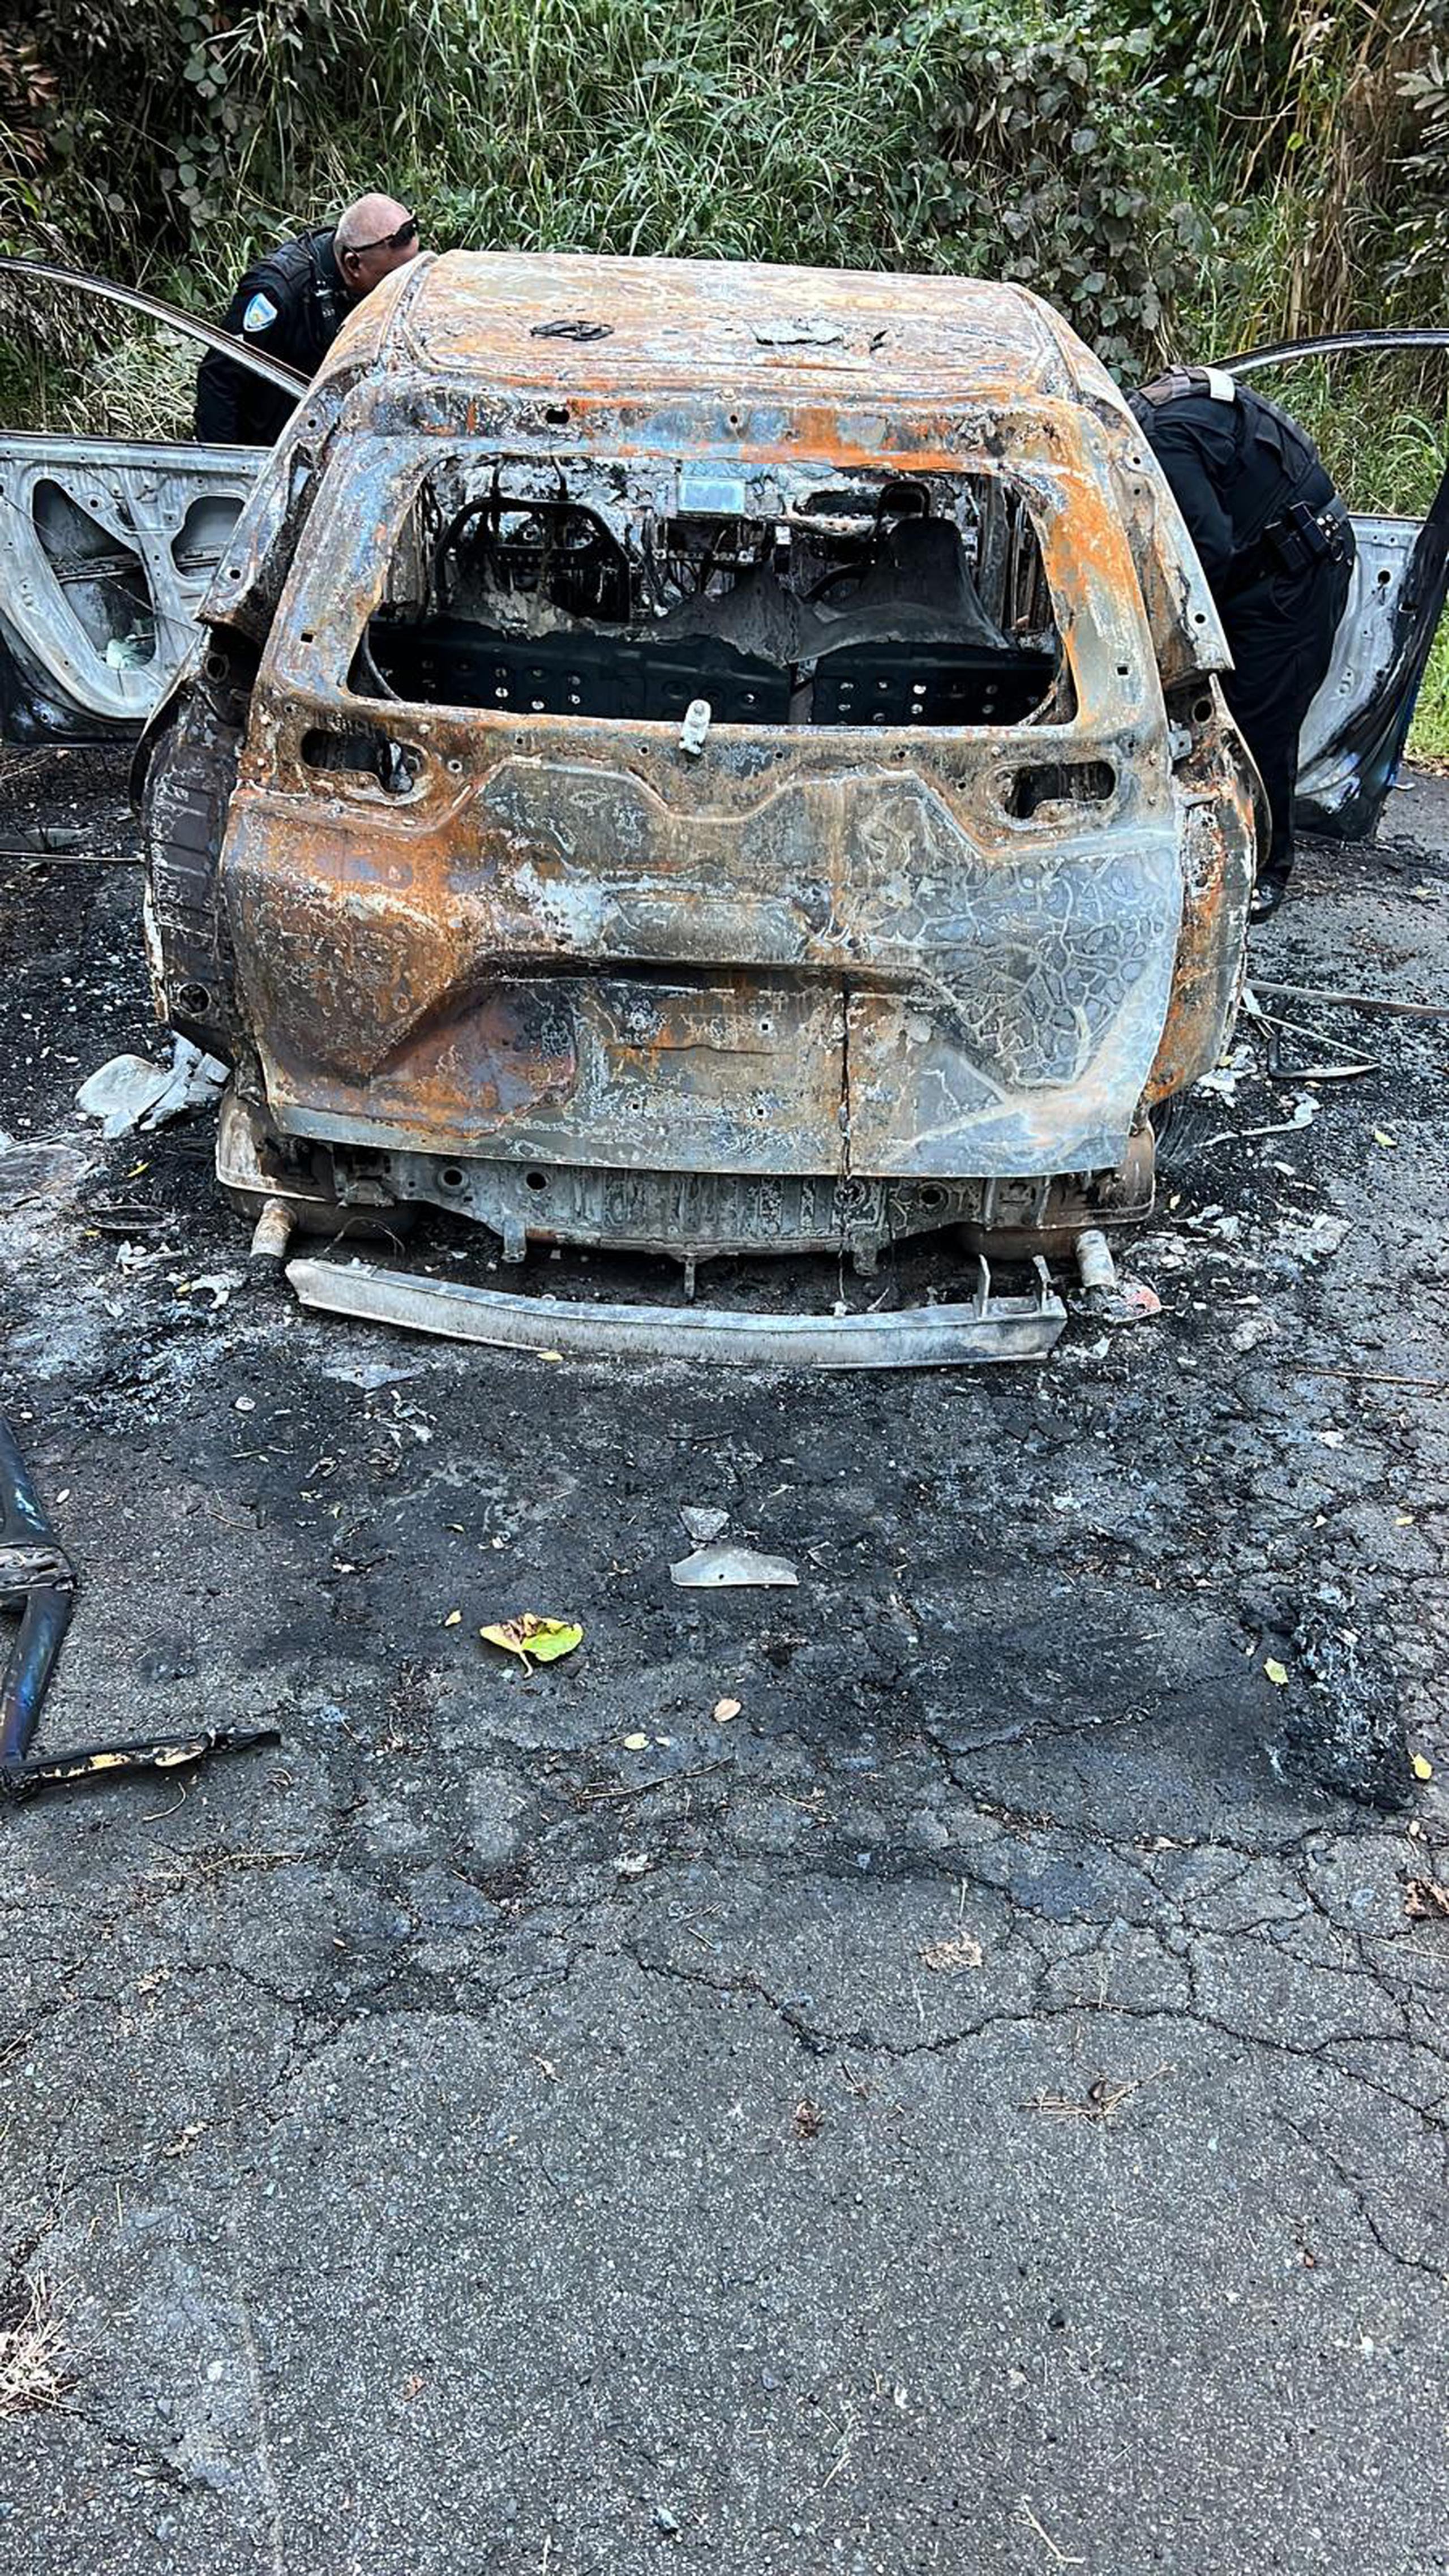 La Policía Municipal de San Juan ocupó un vehículo quemado con la descripción similar al que utilizaron gatilleros para asesinar a un hombre en la Placita de Santurce.